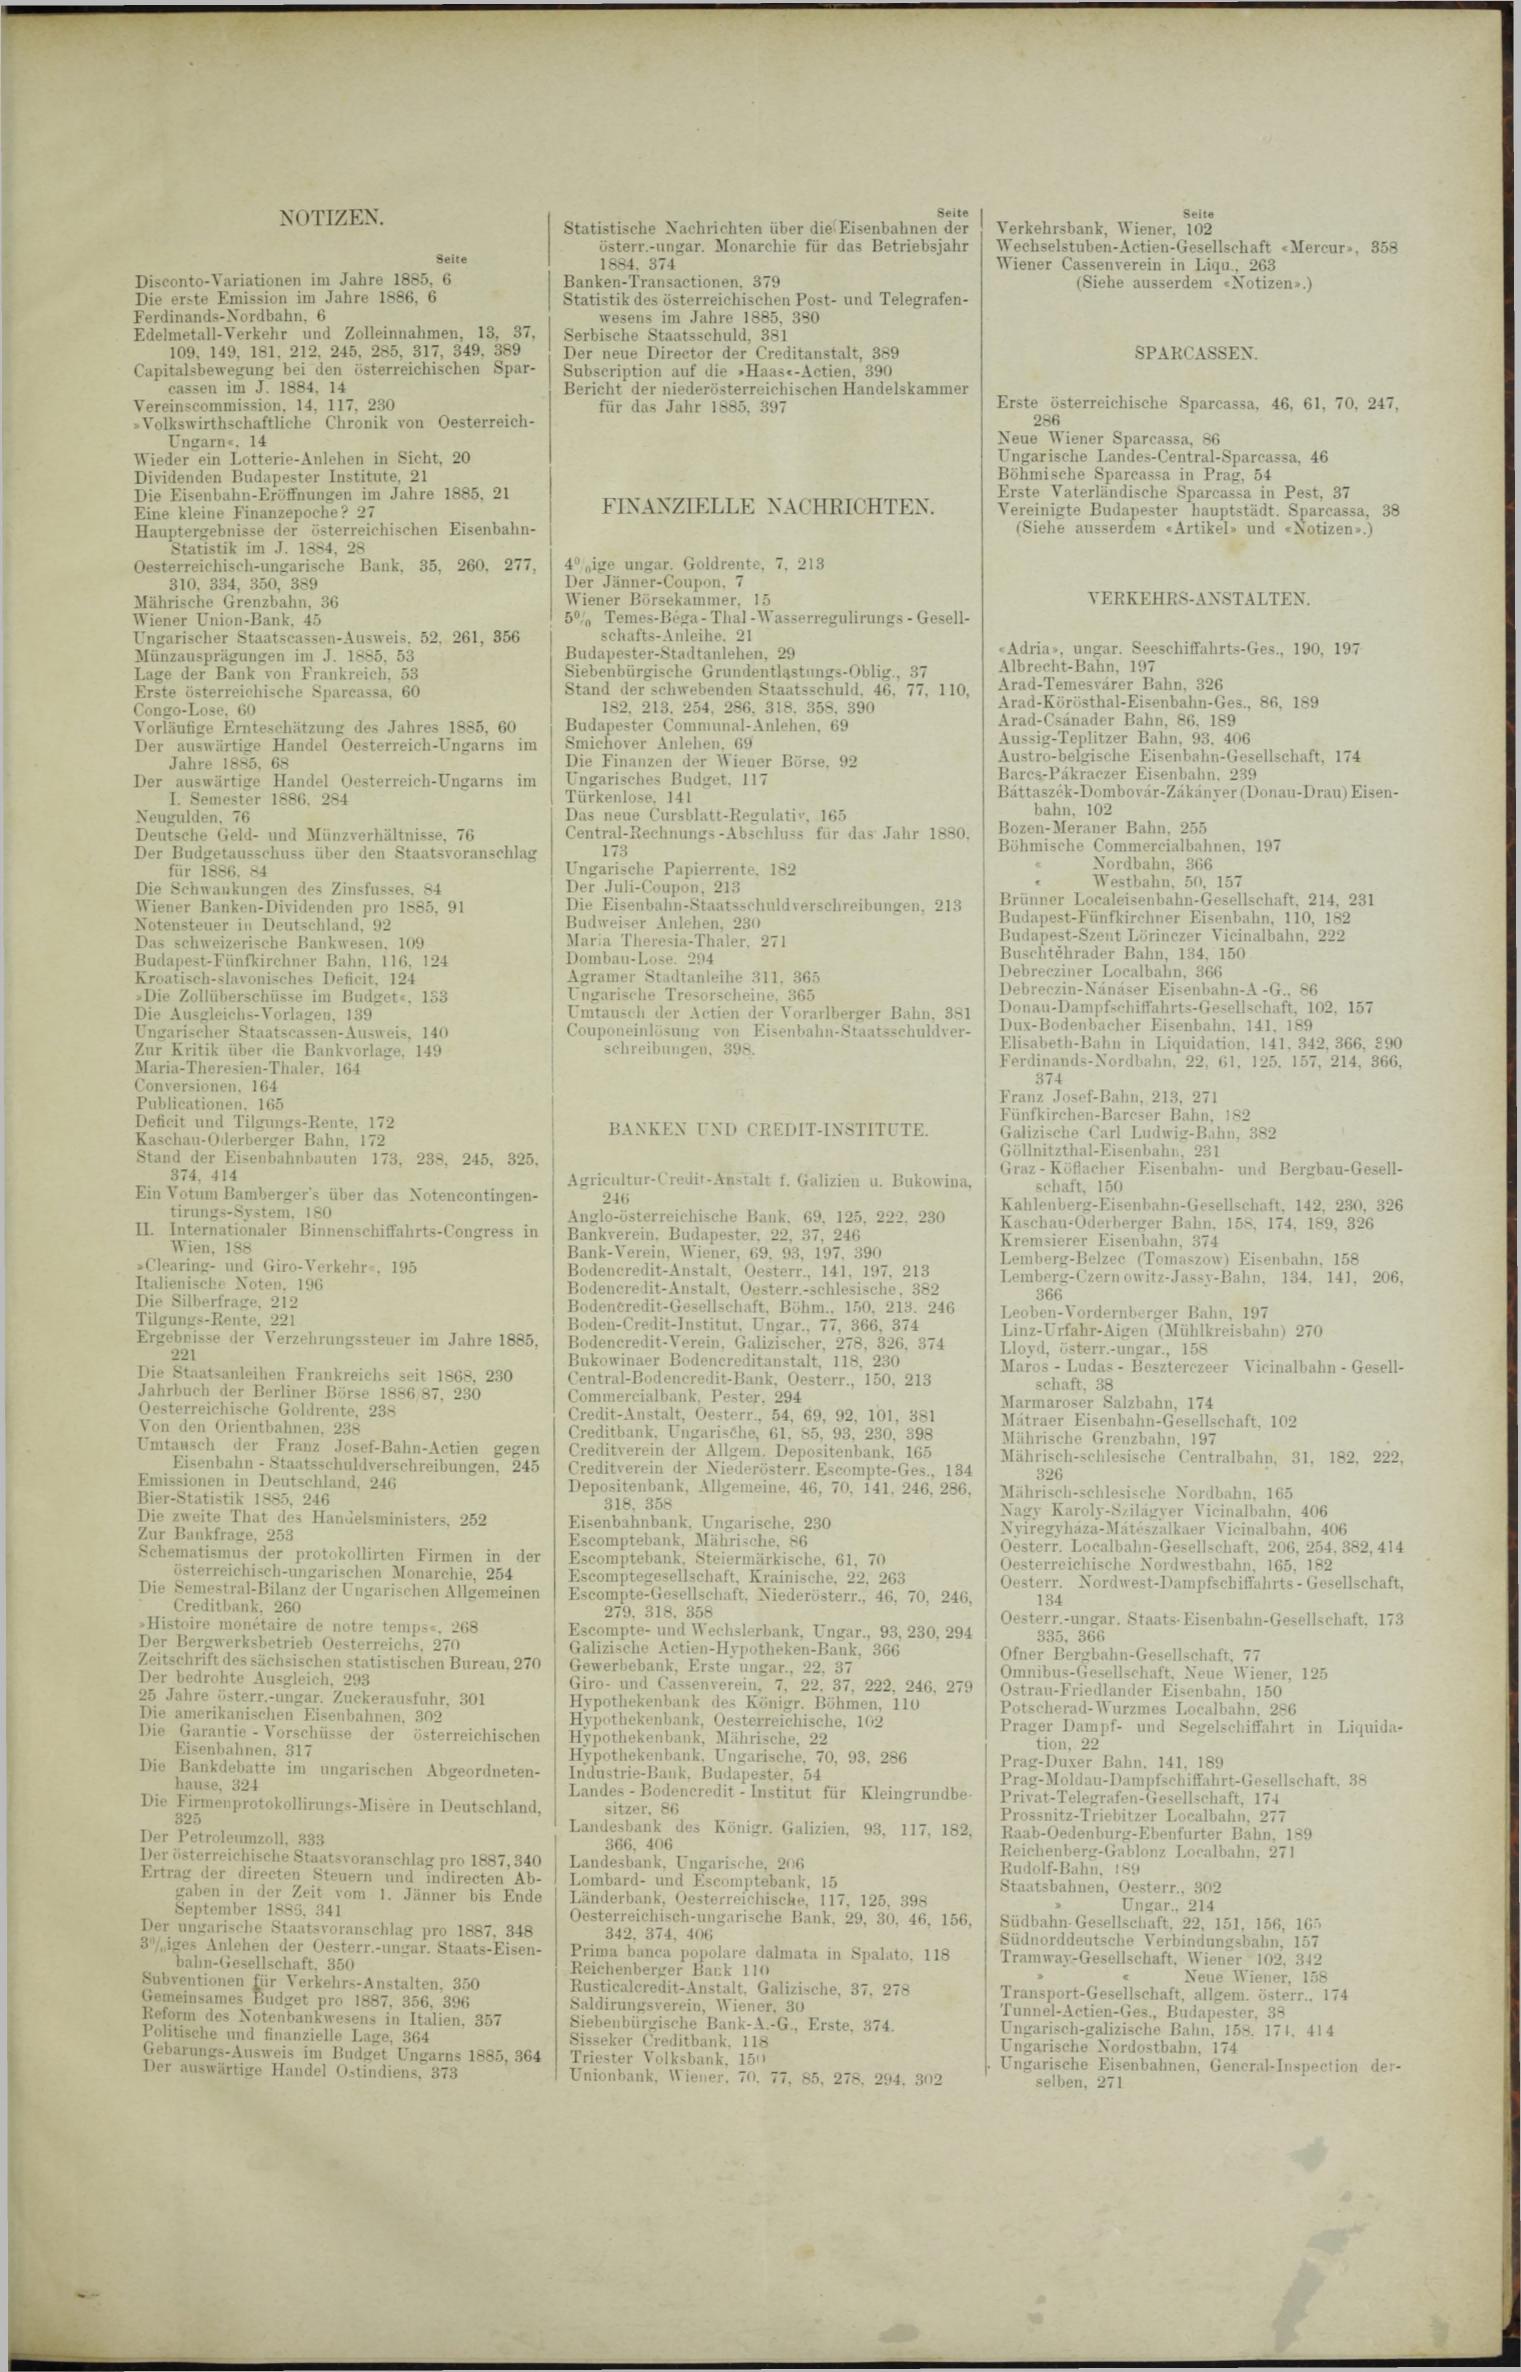 Der Tresor 18.02.1886 - Seite 11